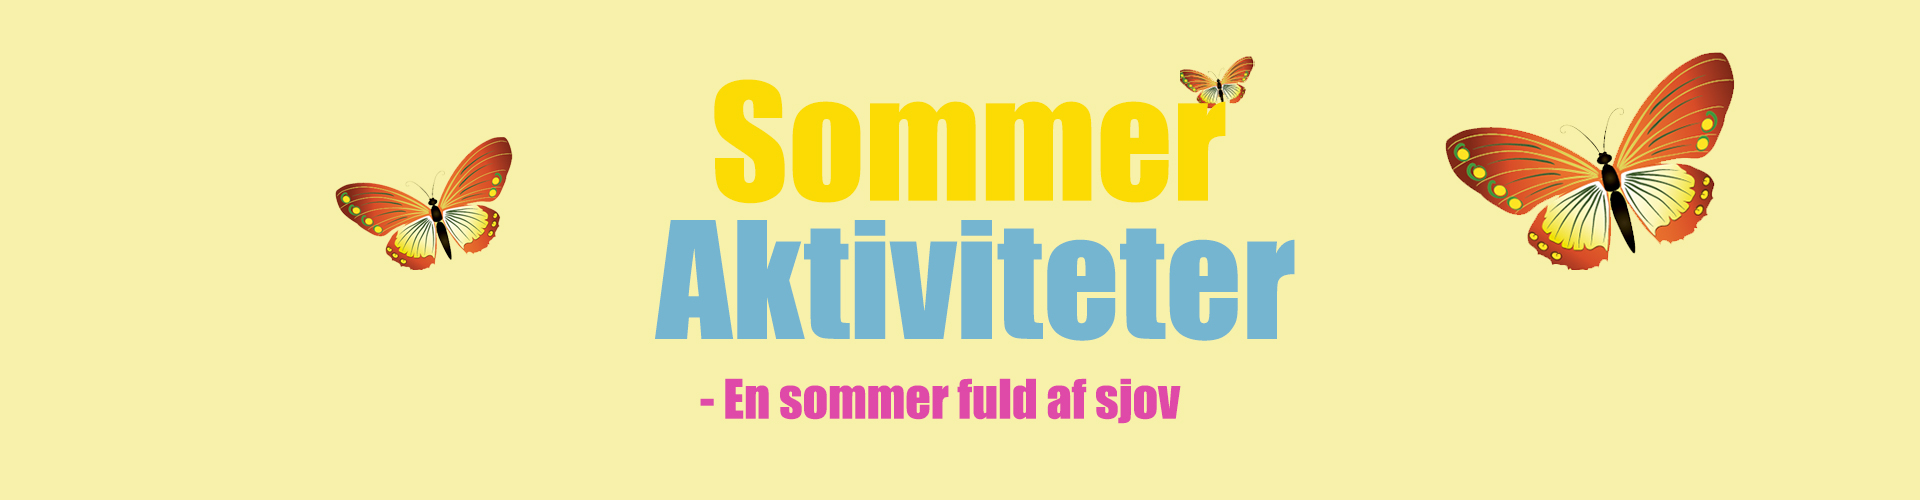 Banner med tekst " Sommeraktiviteter - en sommer fuld af sjov"